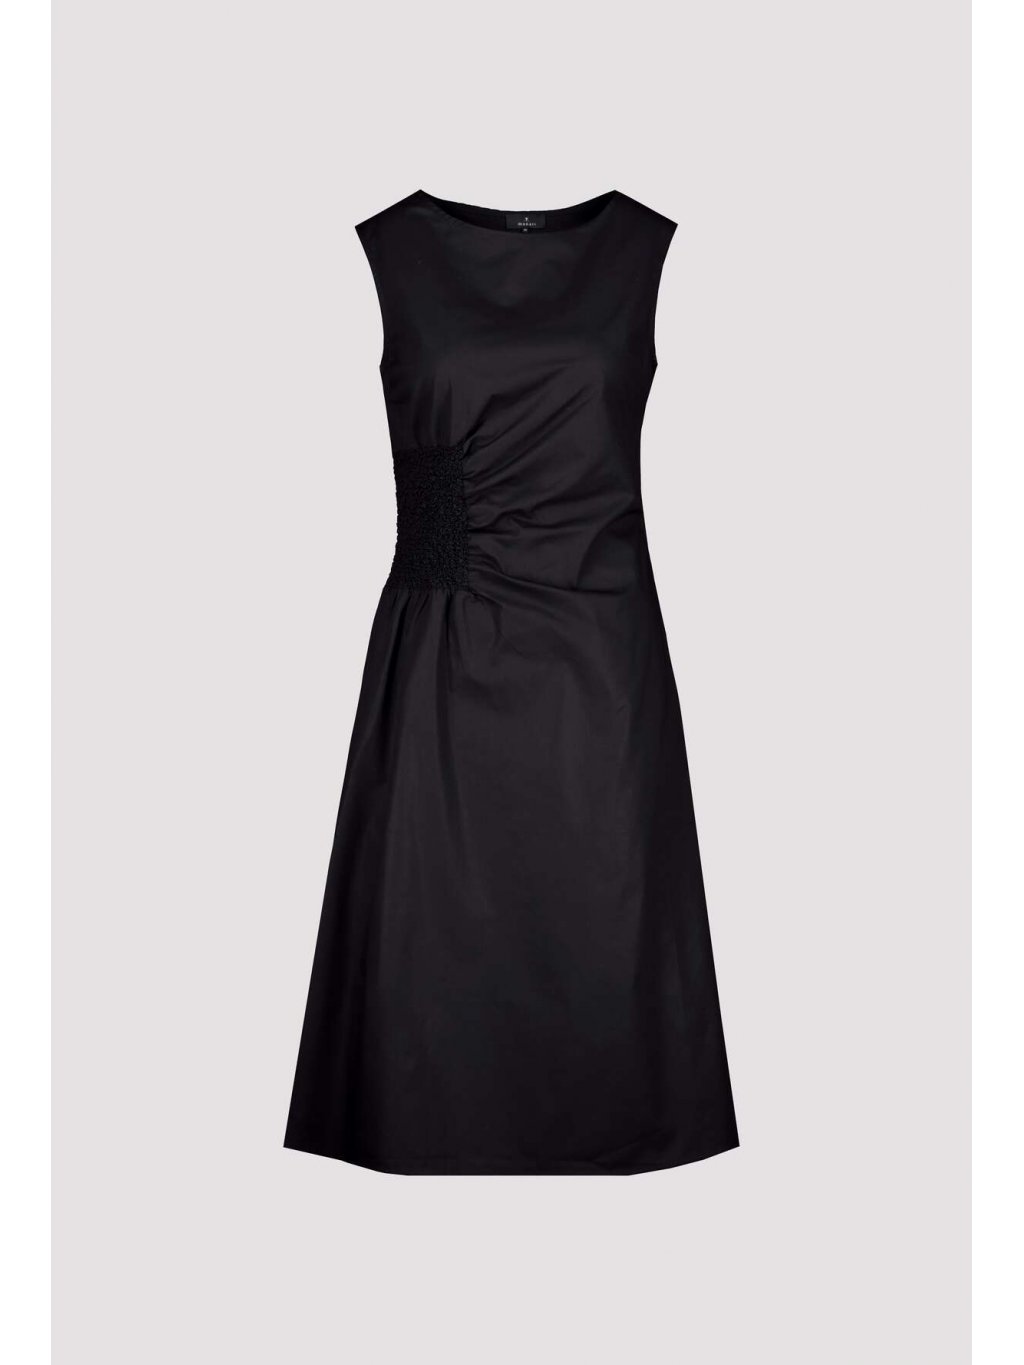 Šaty Monari 8589 černé minimalismus